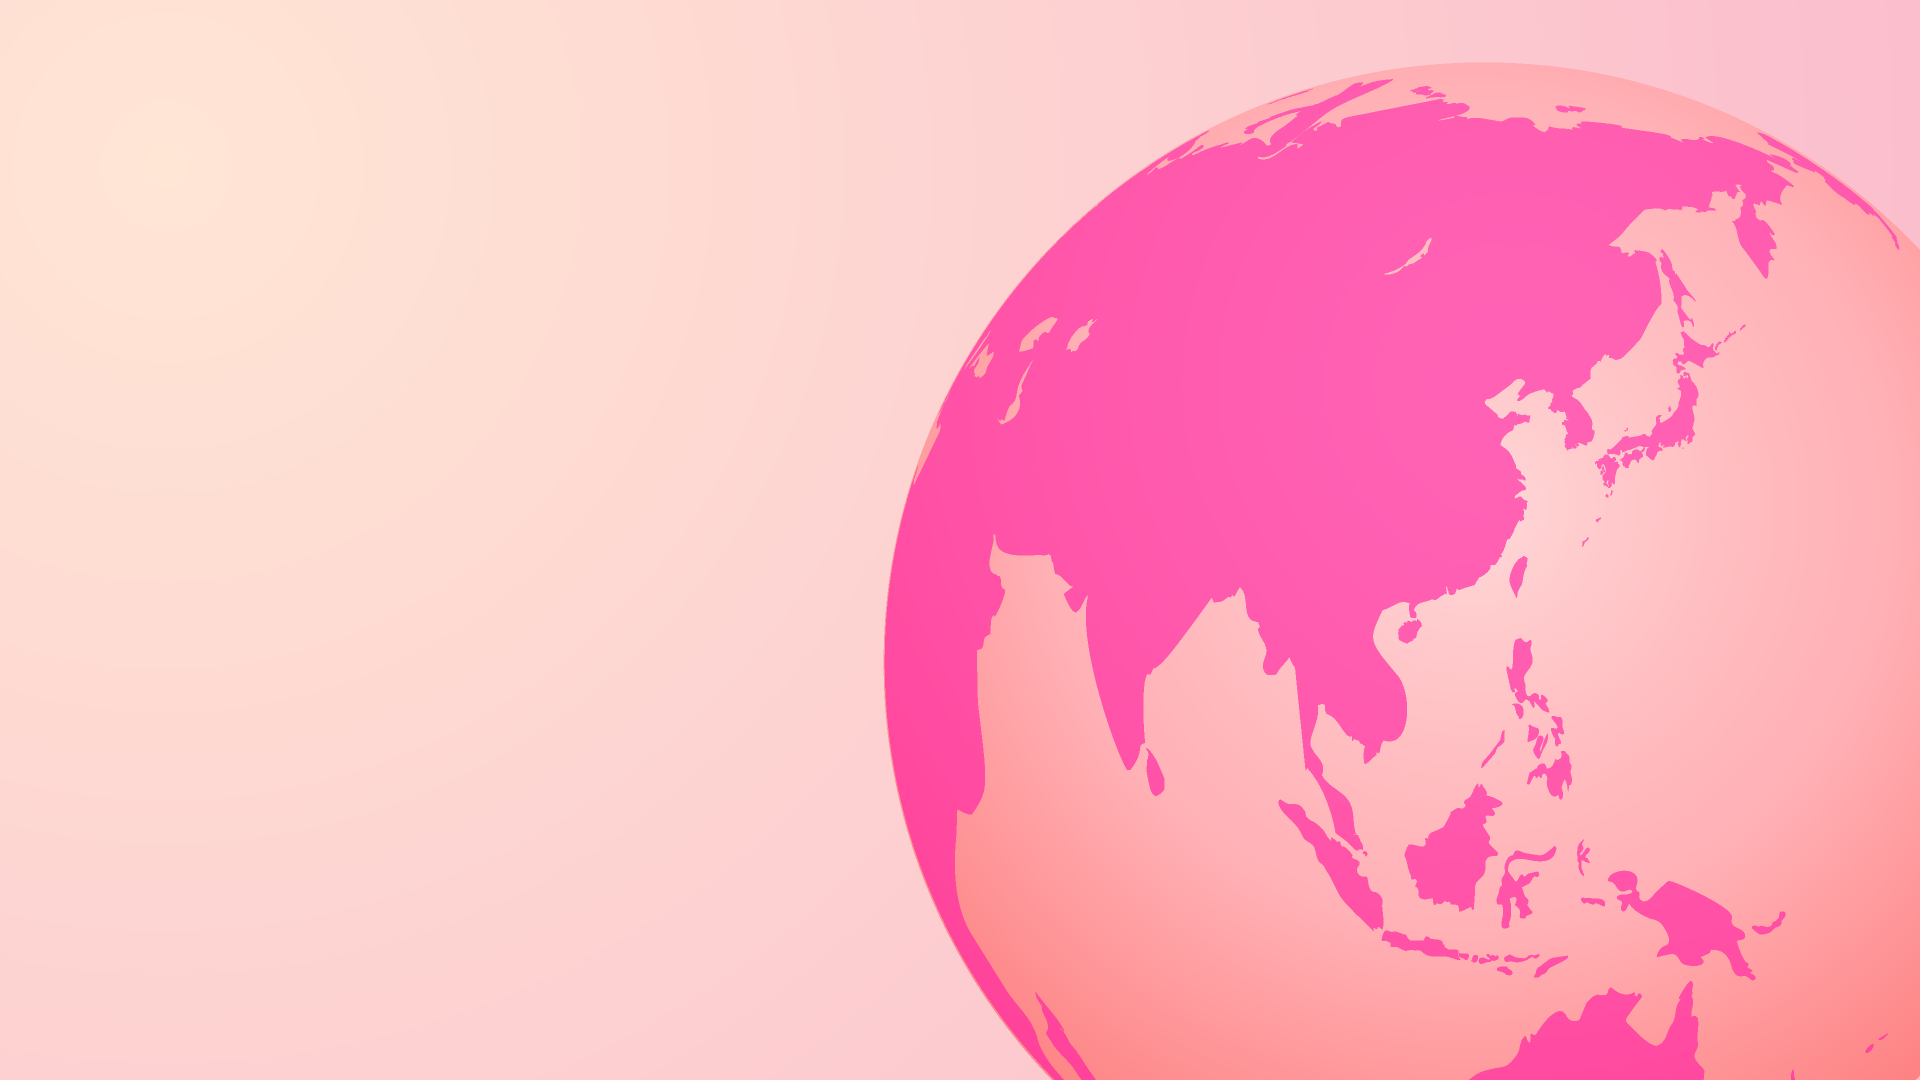 ピンクの地球の無料イラスト素材 イラストイメージ